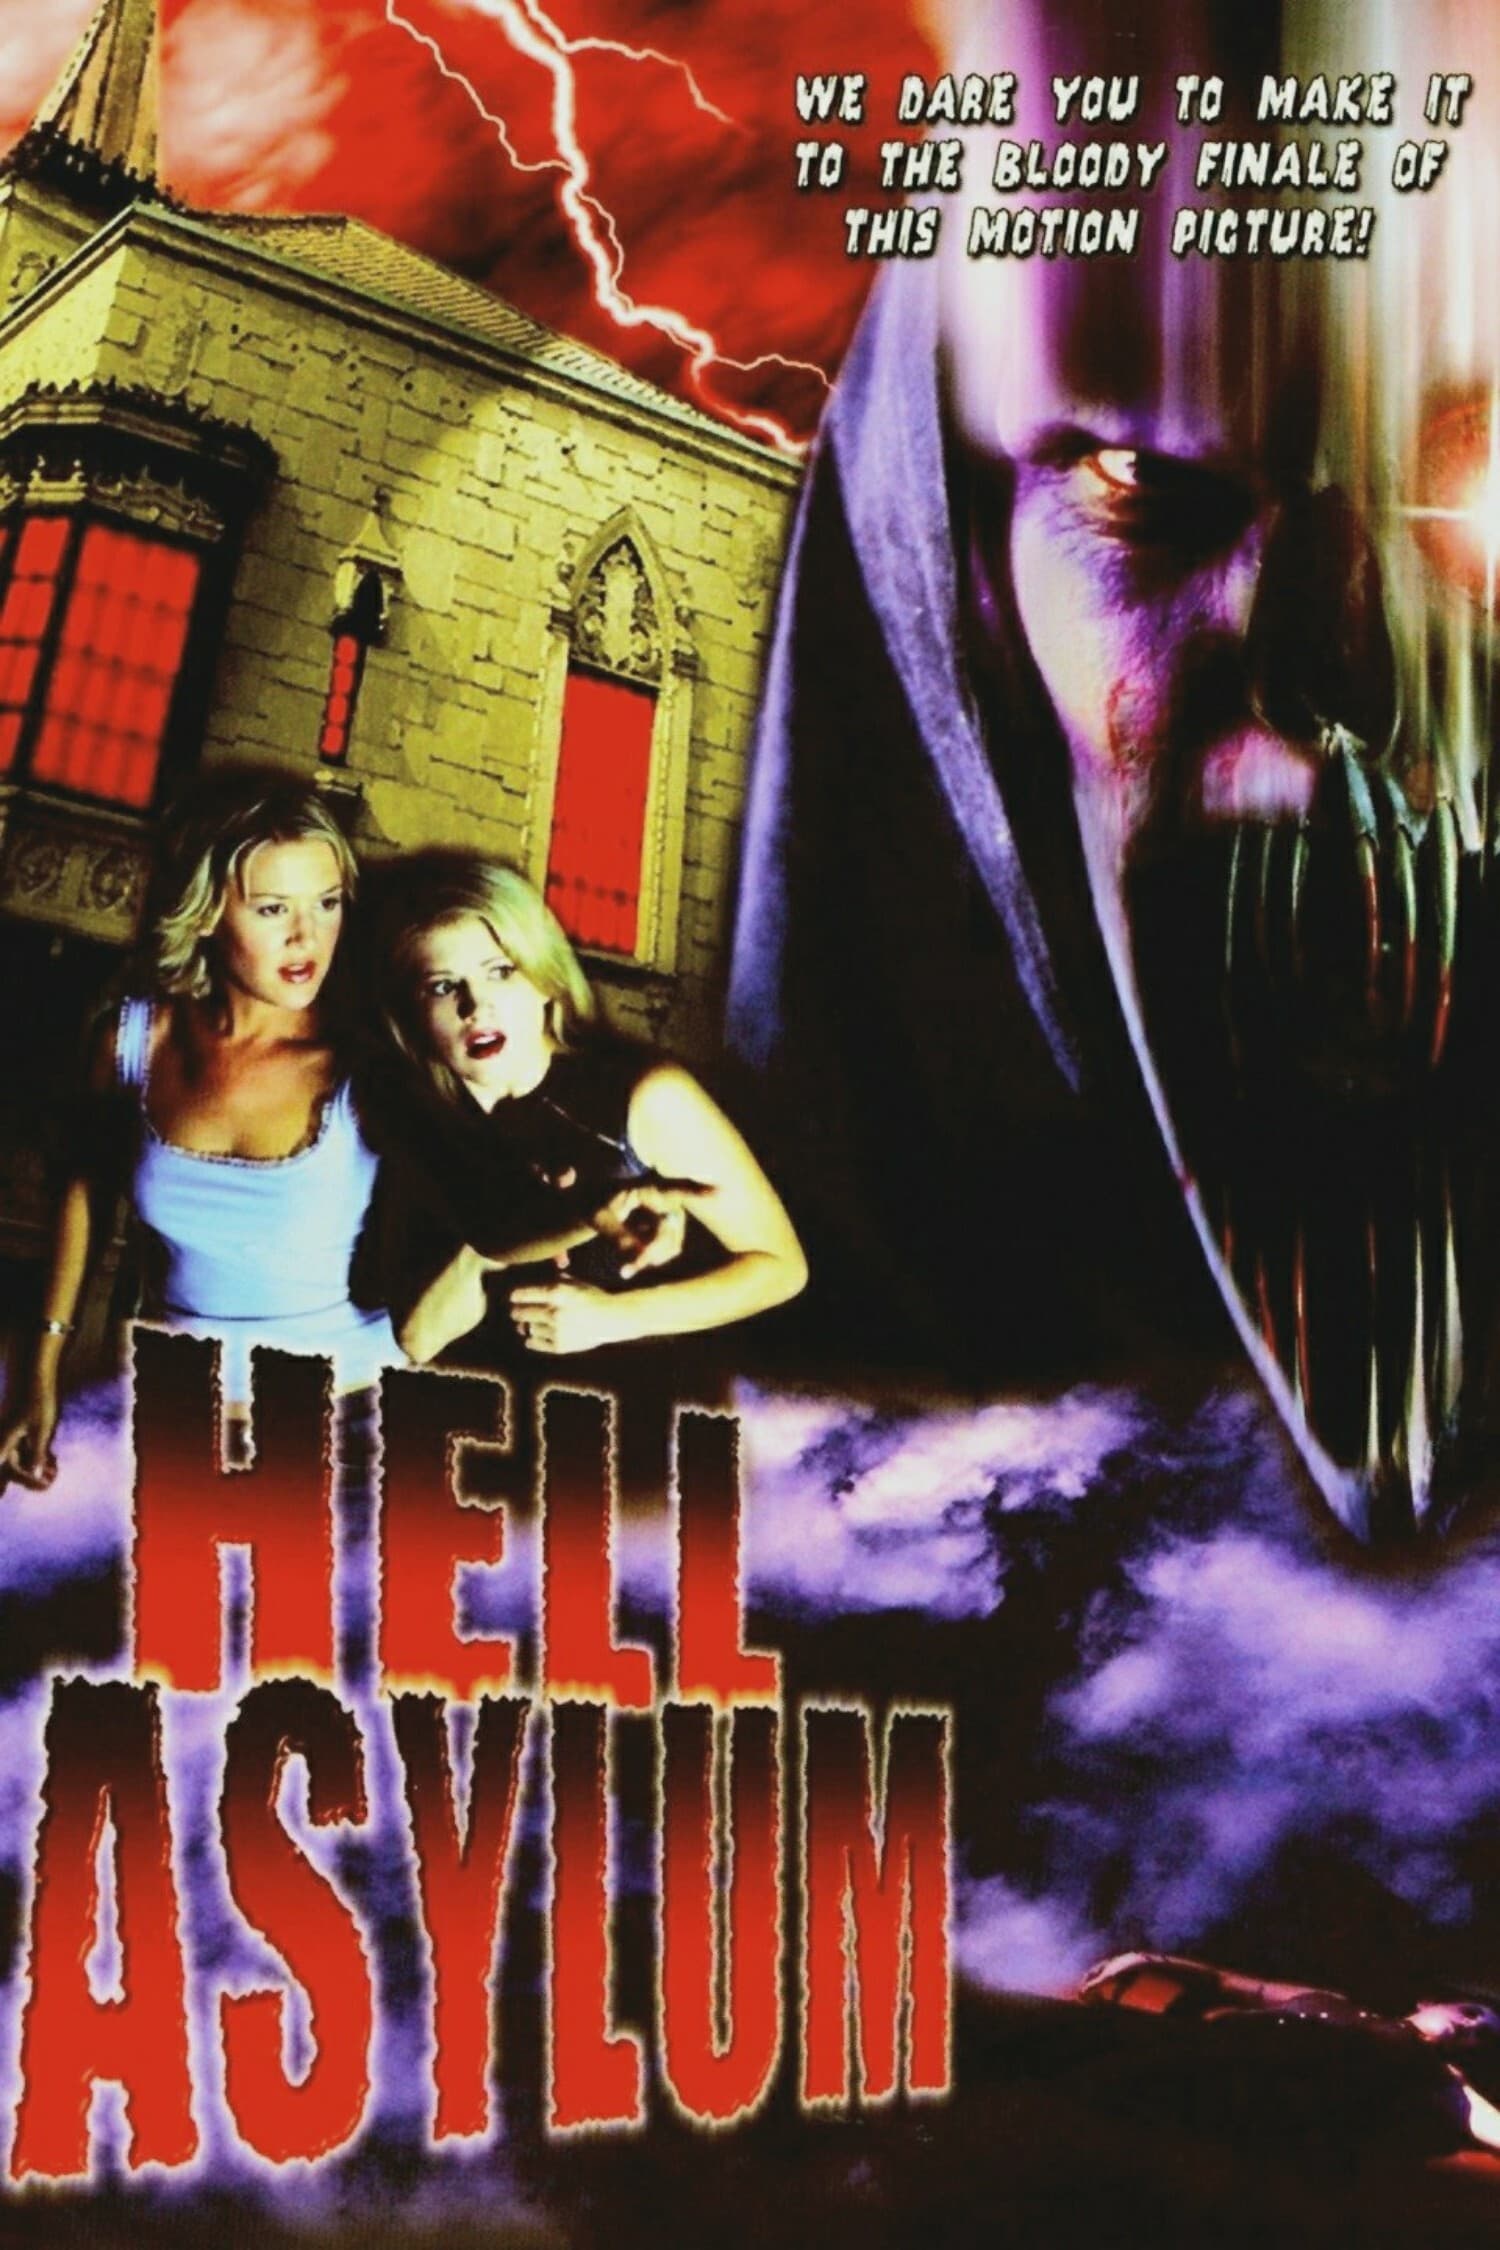 Hell Asylum